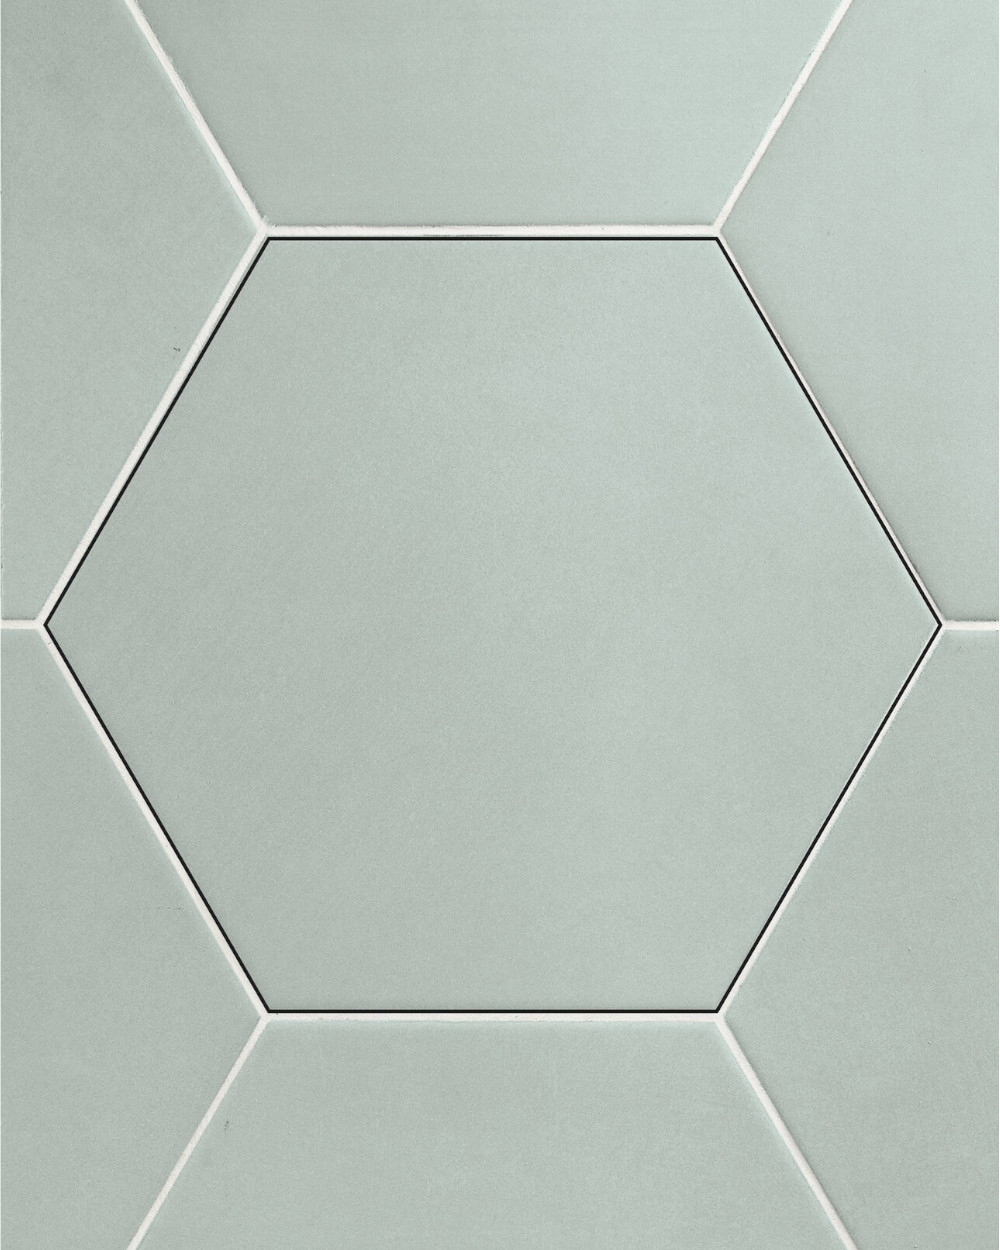 Hexagon tiles Mint Green 23x26cm in modern concrete look | Floor and wall tiles hexagon mint green